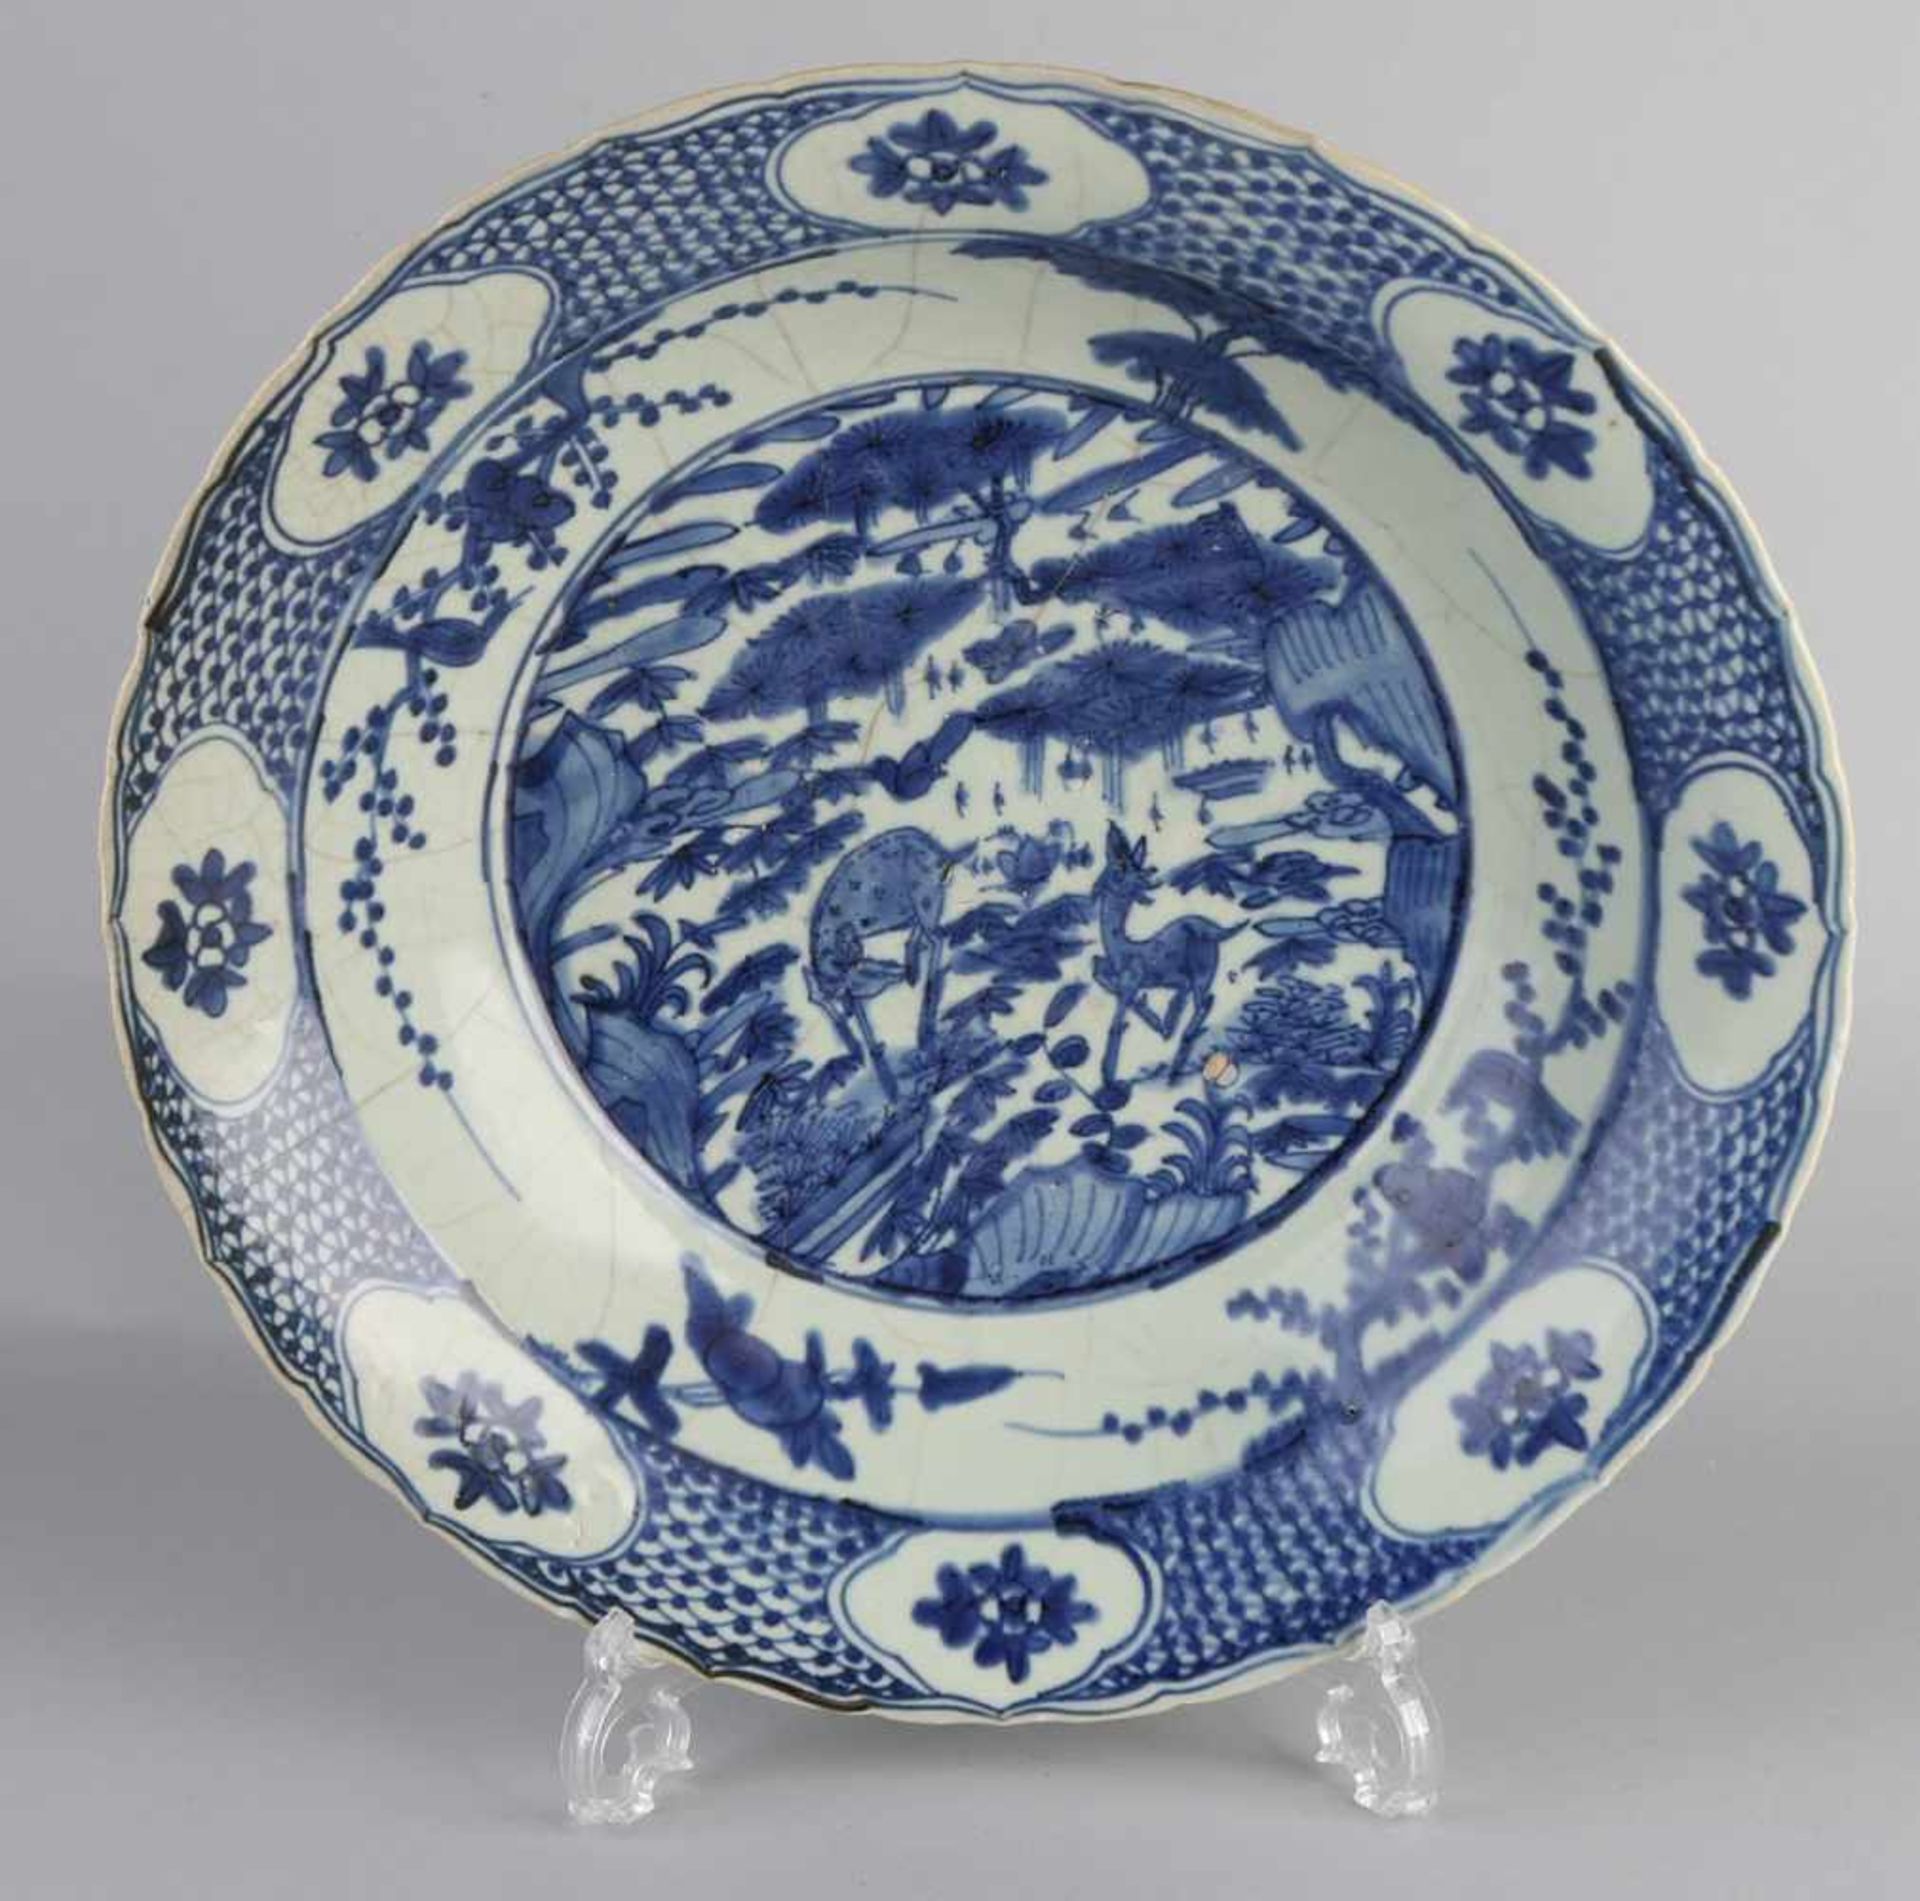 Große chinesische Porzellanschale mit Ming / Hirsch-Dekoration und konturiertem Rand. Größe: Ø 49,